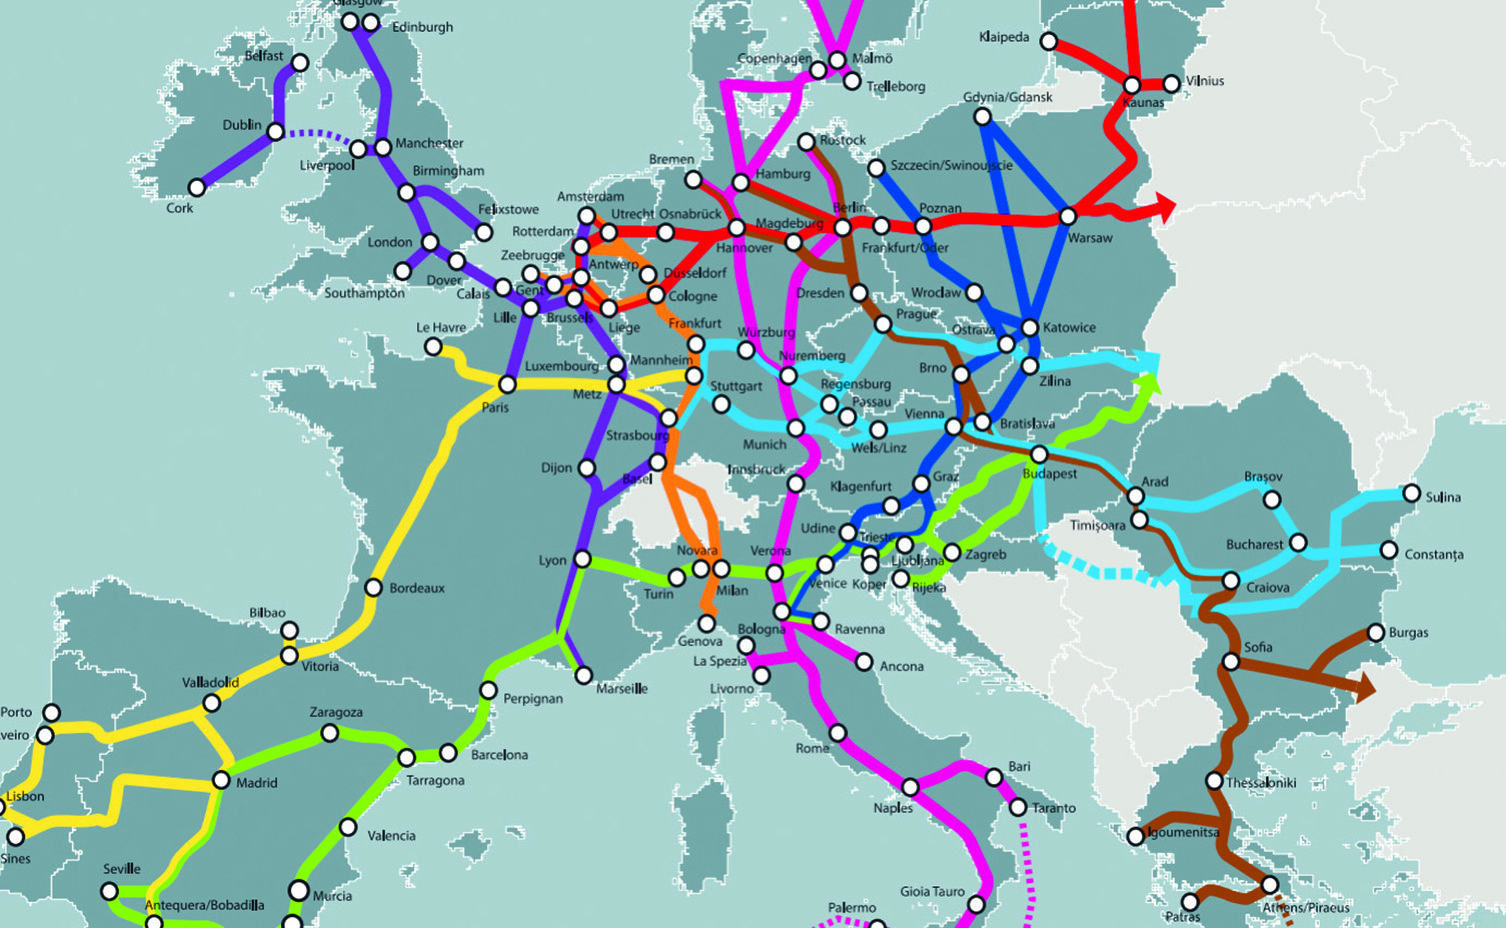 Железные дороги европейской части. Карта транспортных путей Европы. Основные транспортные магистрали Западной Европы. Главные транспортные магистрали зарубежной Европы на карте. Судоходные реки зарубежной Европы.